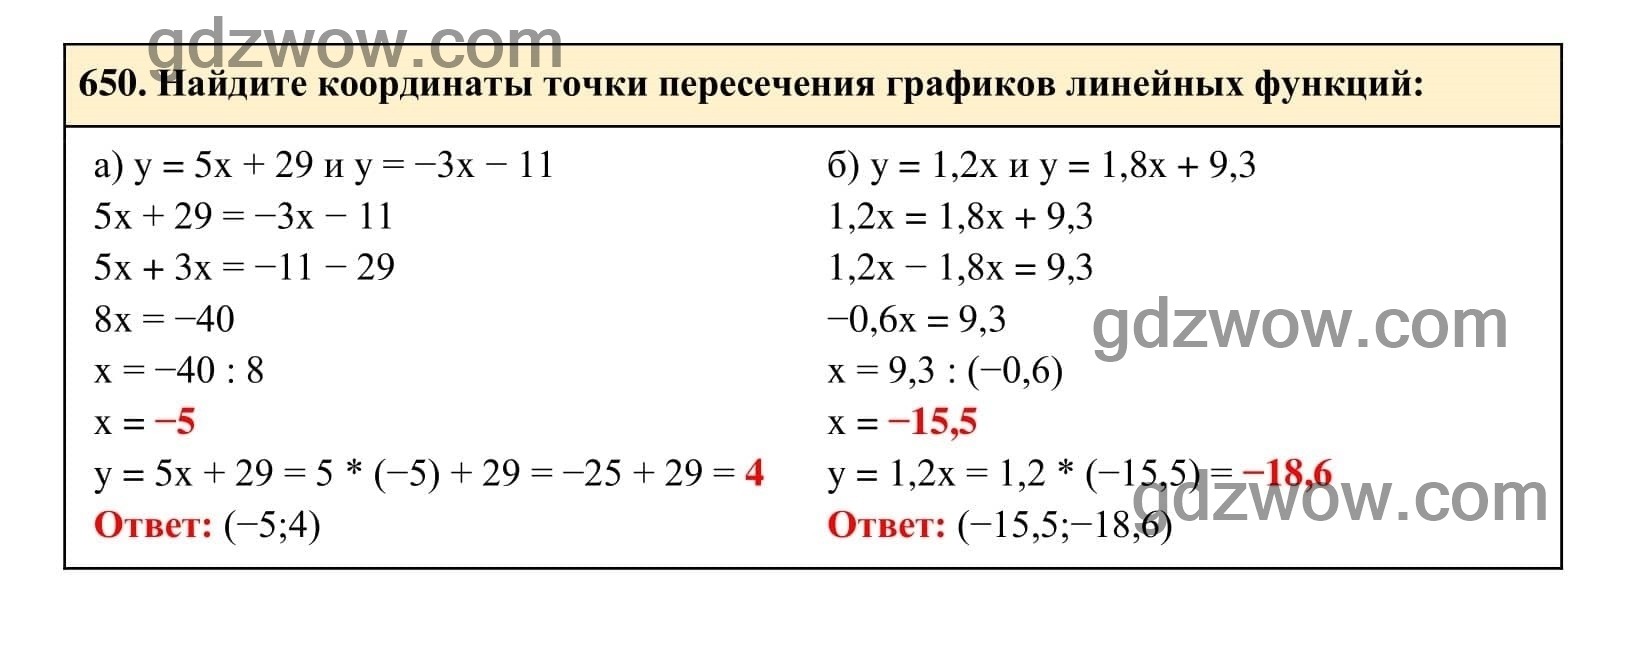 Упражнение 650 - ГДЗ по Алгебре 7 класс Учебник Макарычев (решебник) - GDZwow